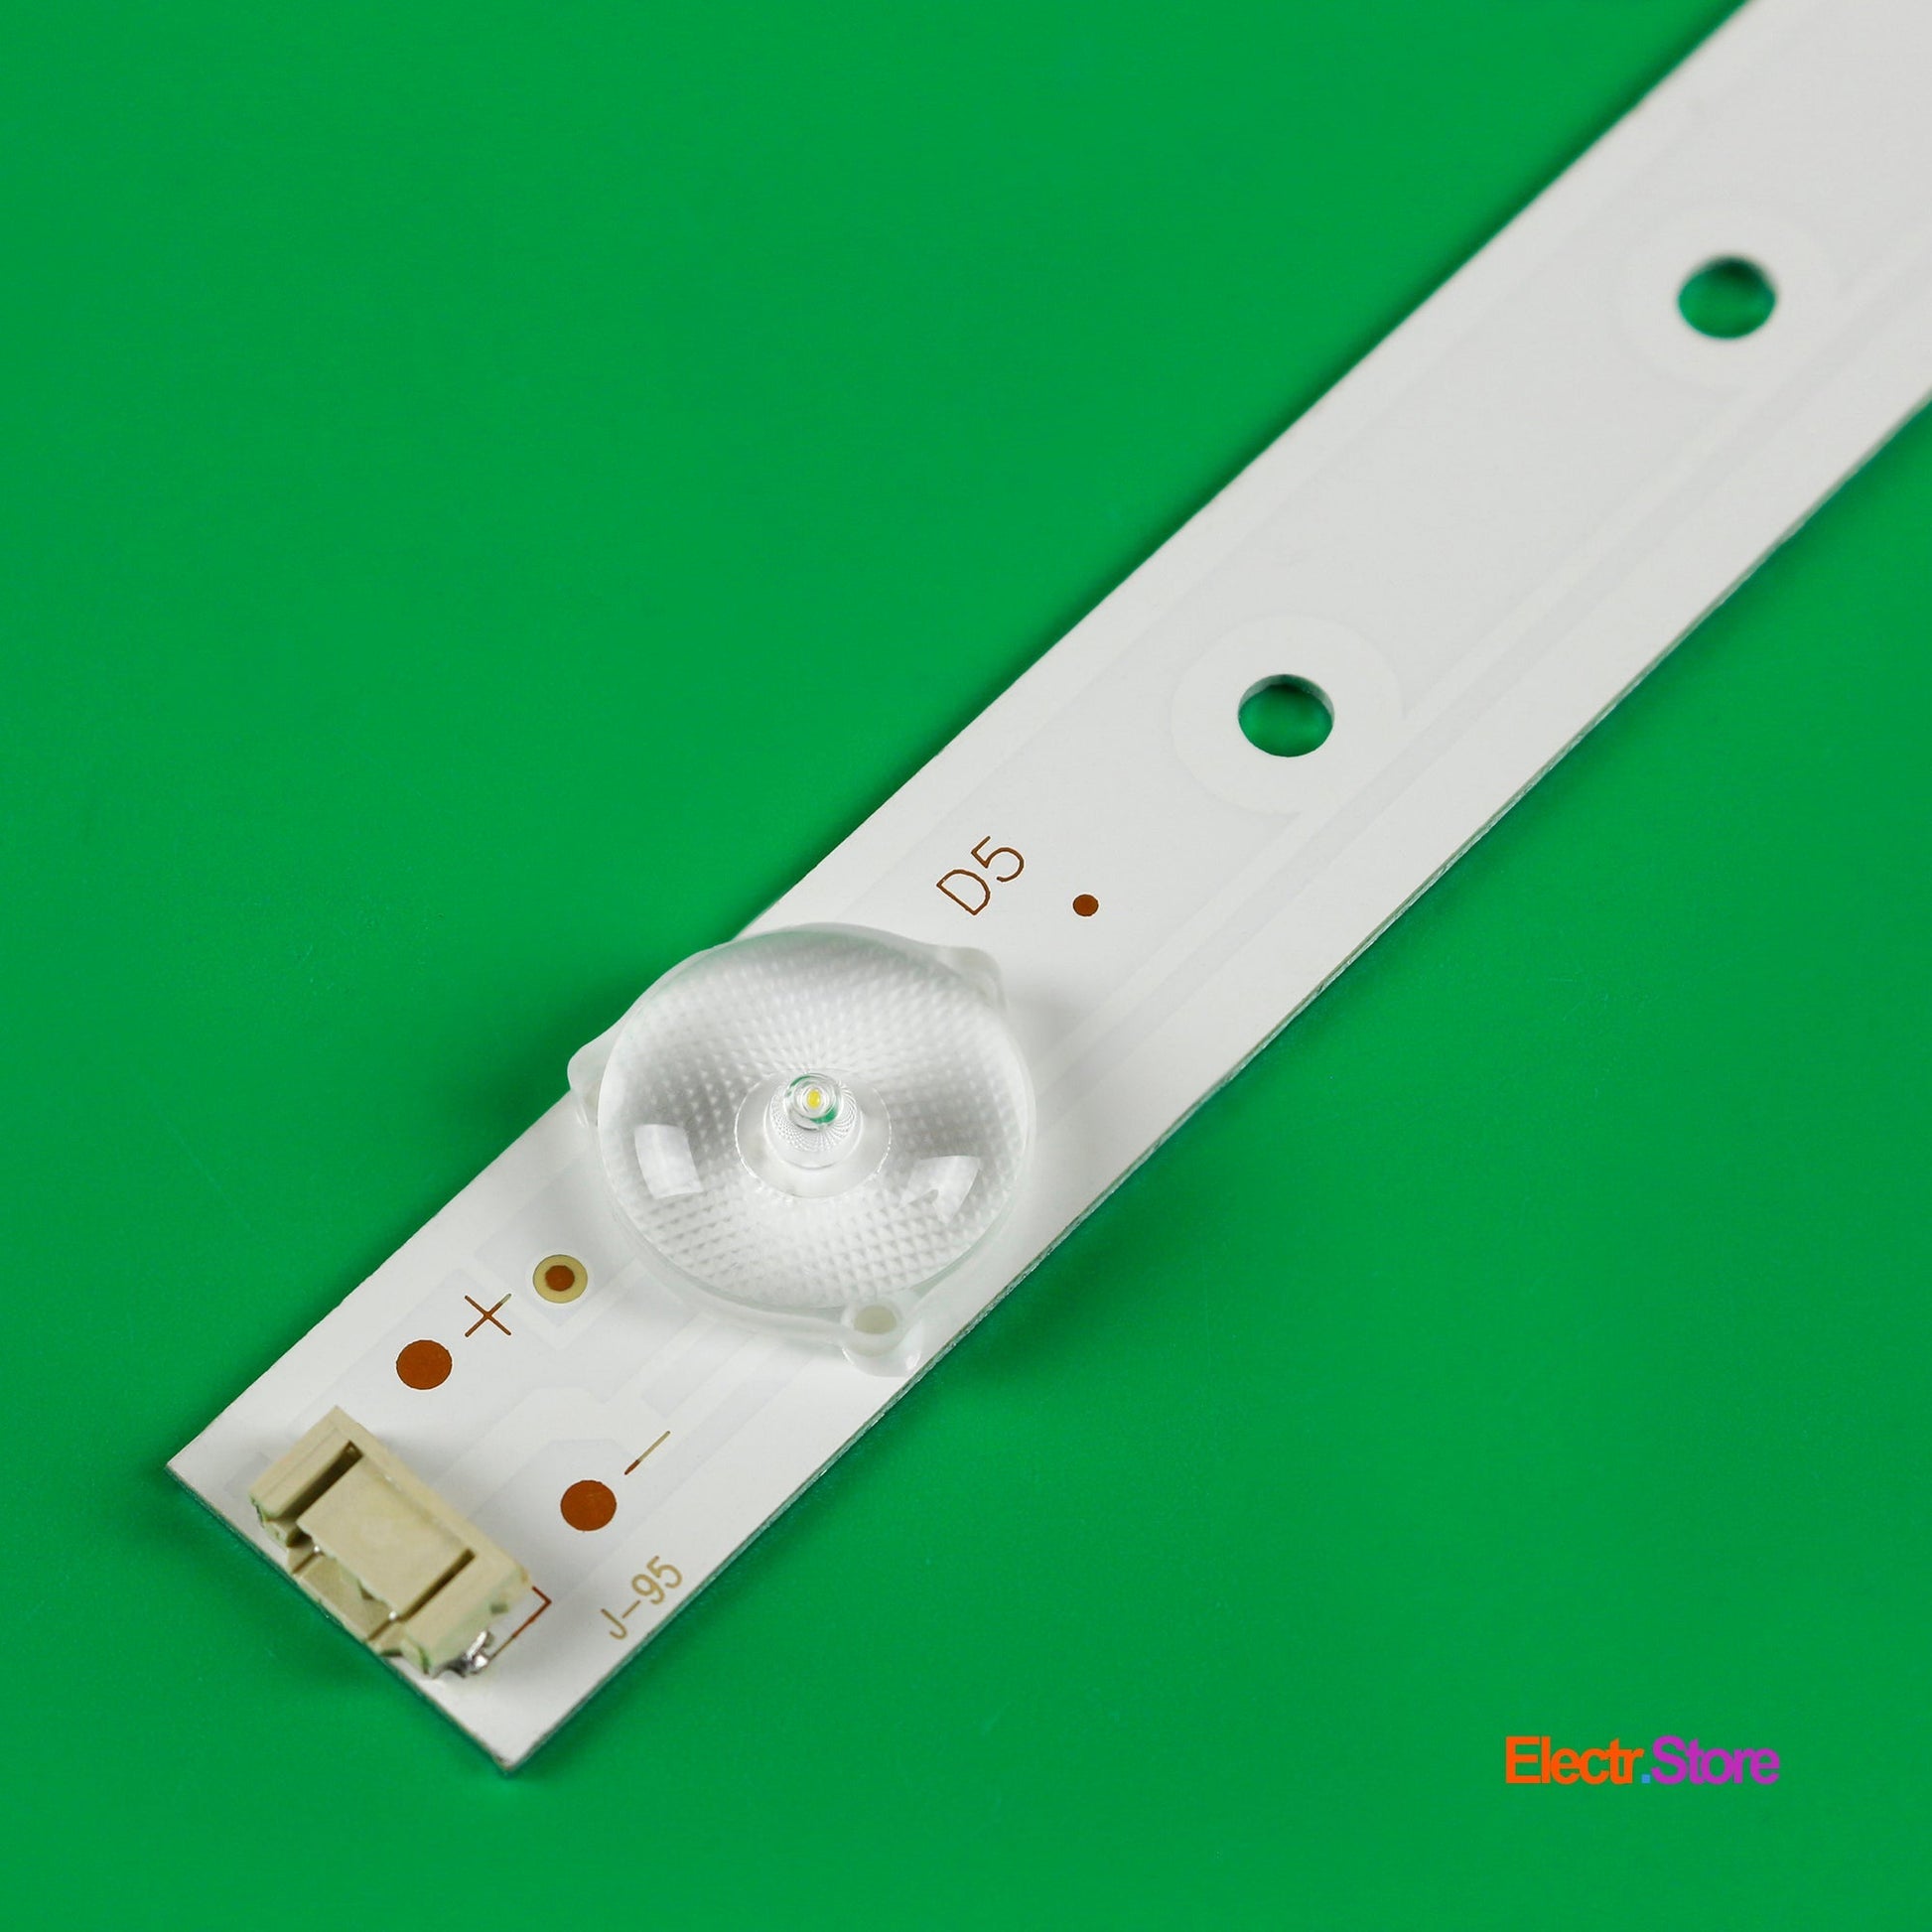 LED Backlight Strip Kits, 5800-W43001-3P00, 5800-W43001-5P00 (8 pcs/kit), for TV 42", 43" Polaroid: TQL43F4PR001 42"43" 5800-W43001-3P00 Erisson LED Backlights Polaroid Skyworth Electr.Store